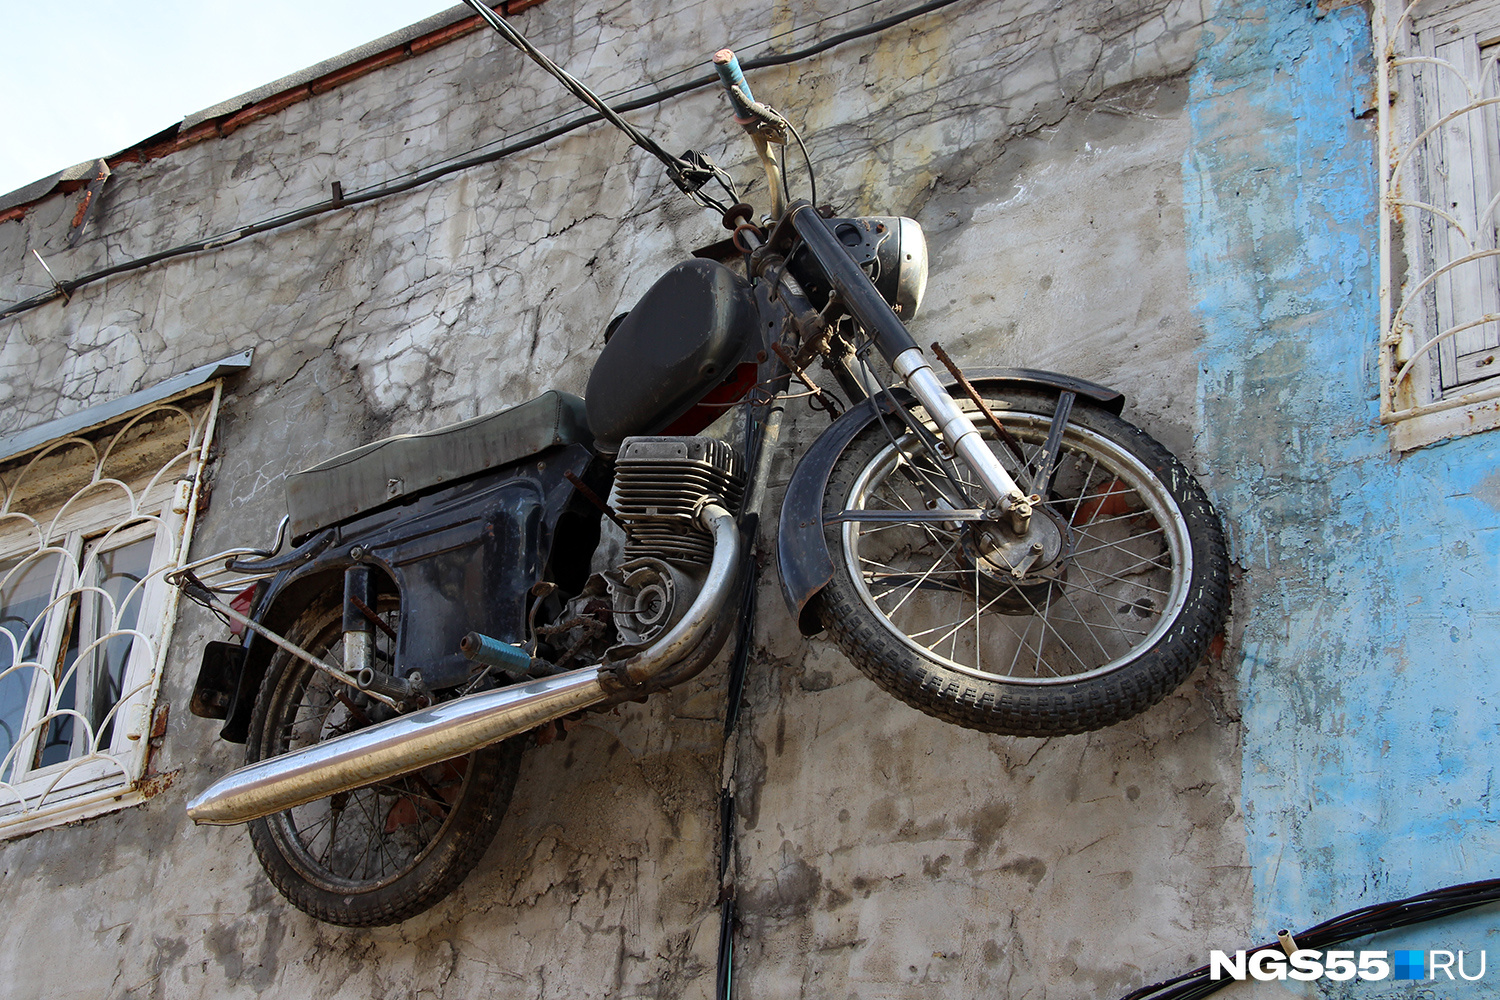 Над входом в гараж Михаила висит мотоцикл